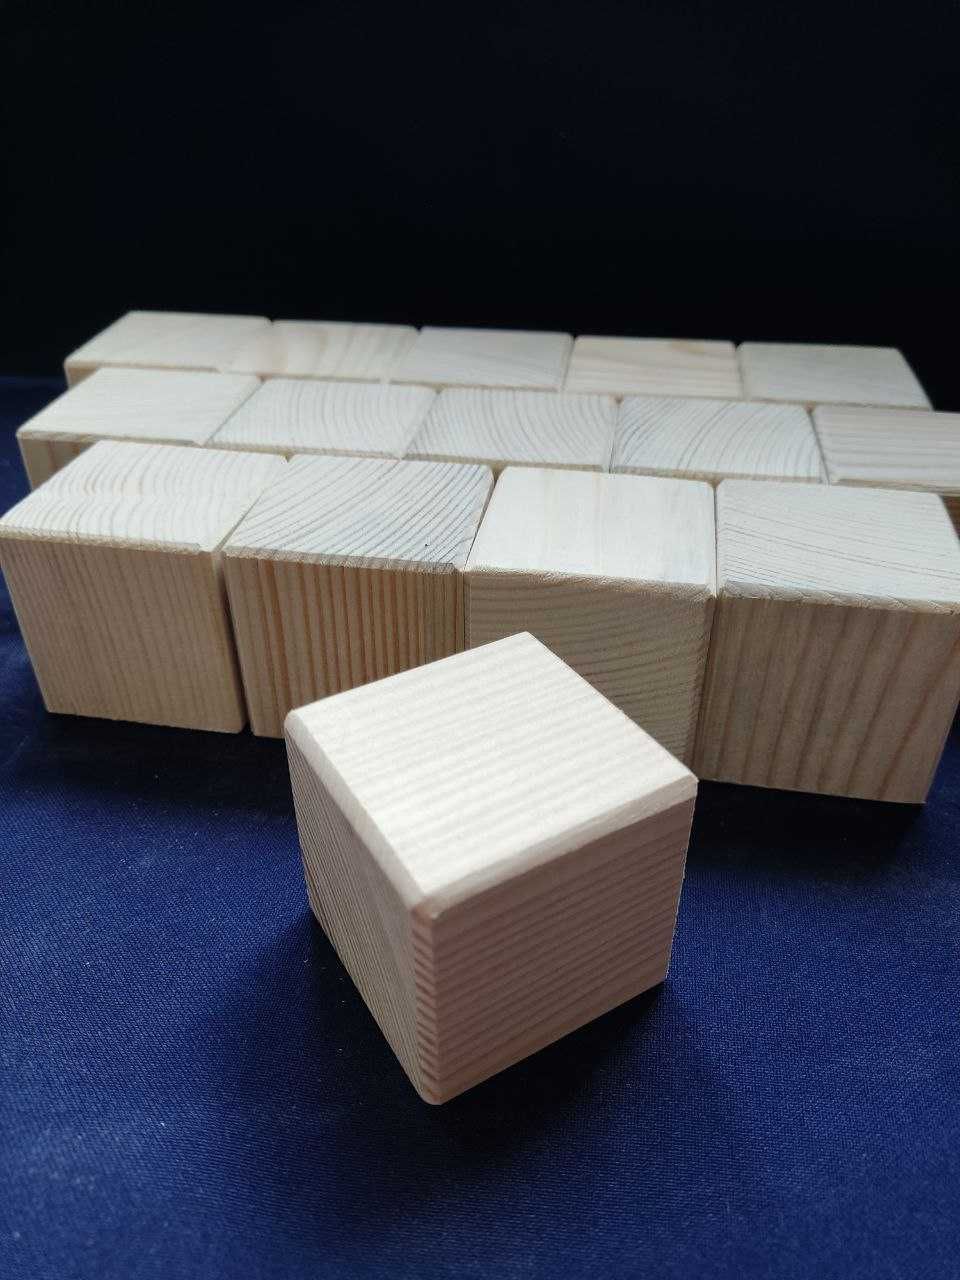 Дерев’яна заготовка, кубики, конструктор (деревянные кубики)